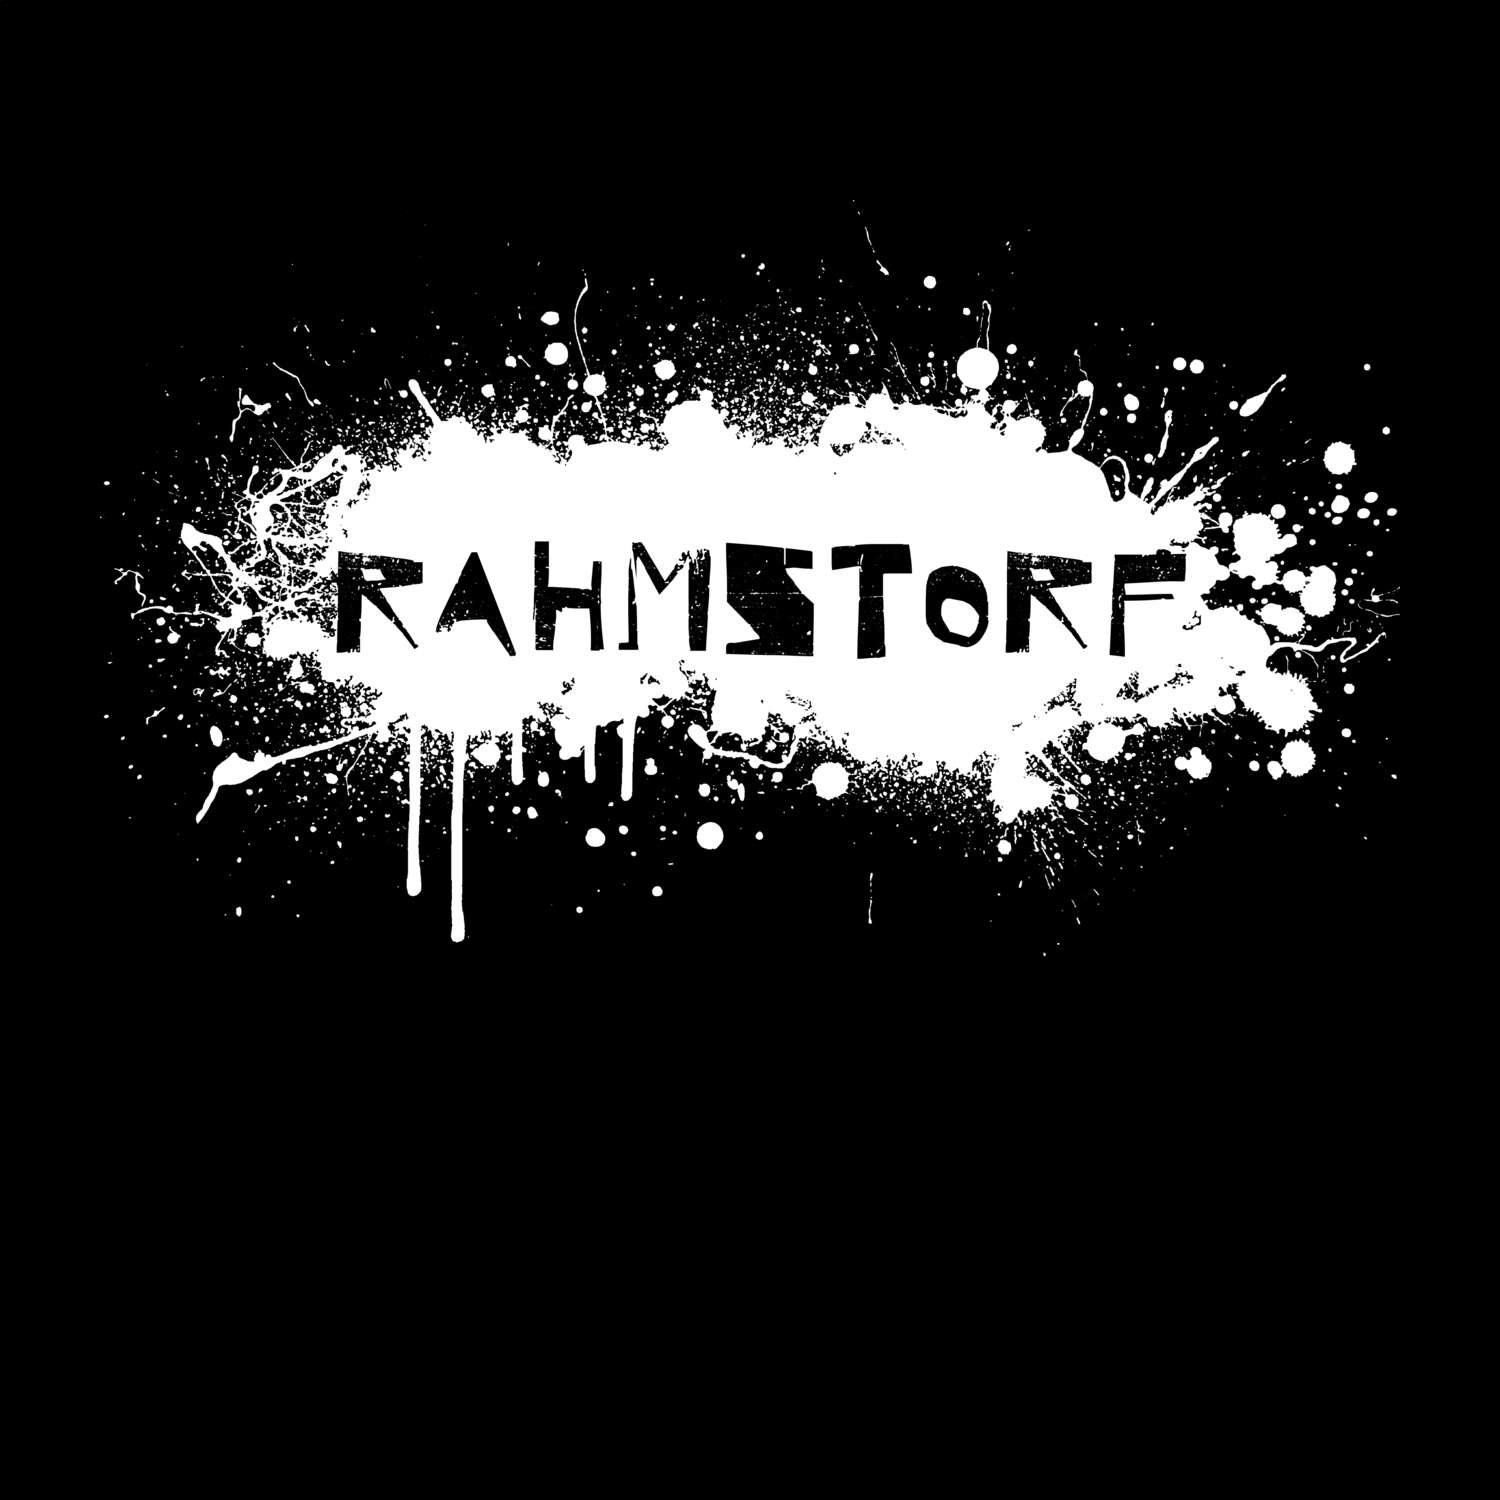 Rahmstorf T-Shirt »Paint Splash Punk«